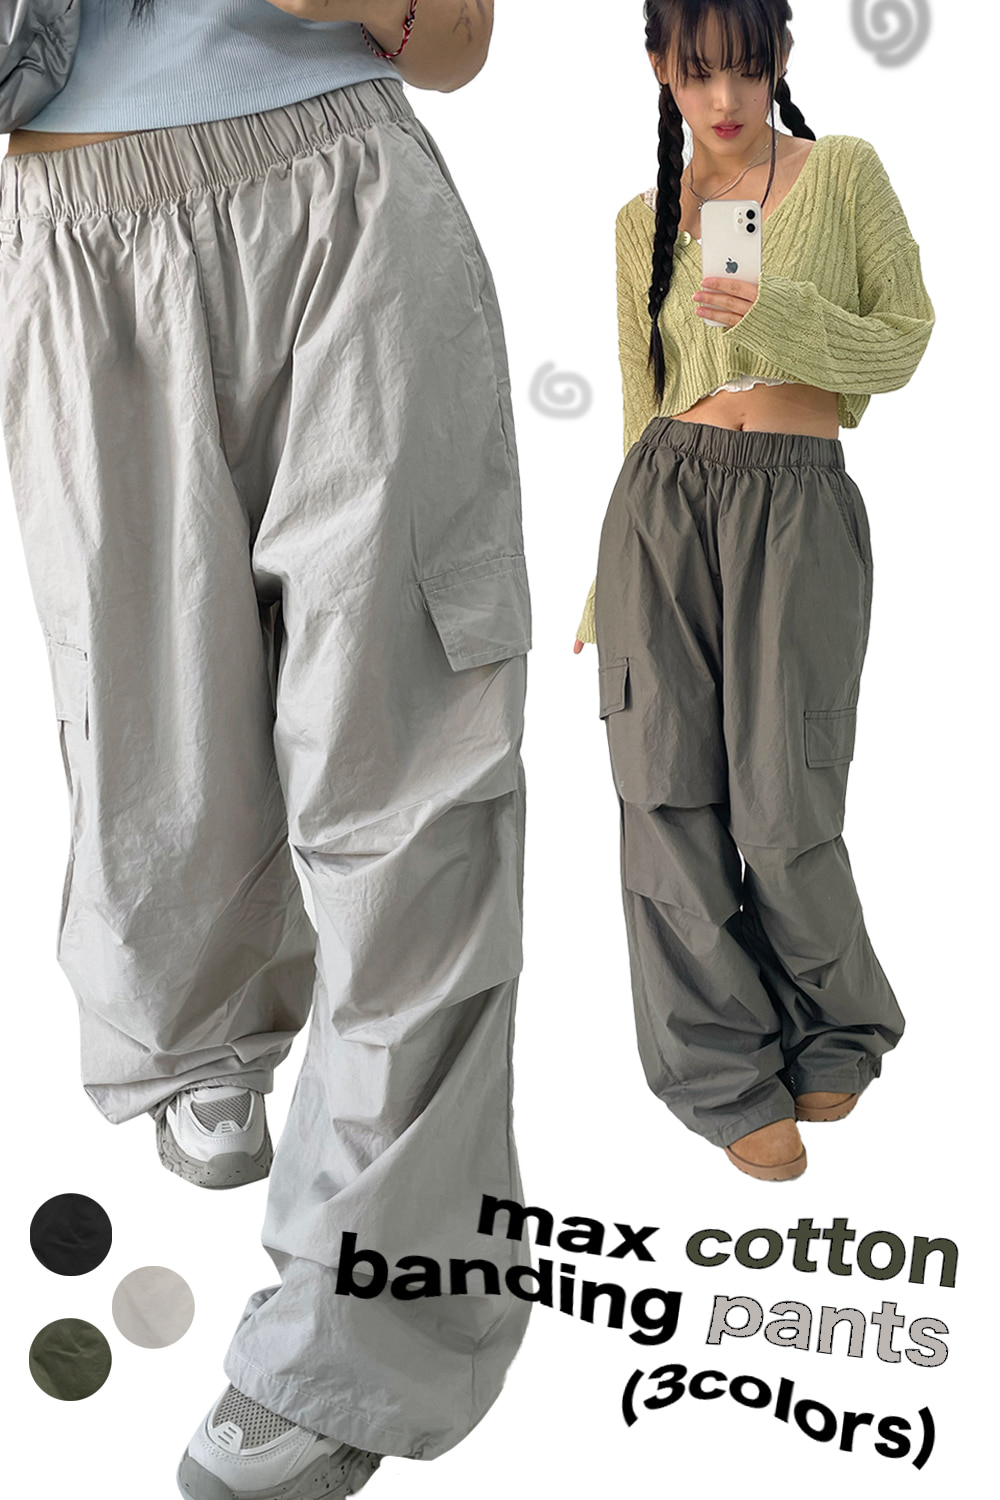 max cotton banding pants (3colors)